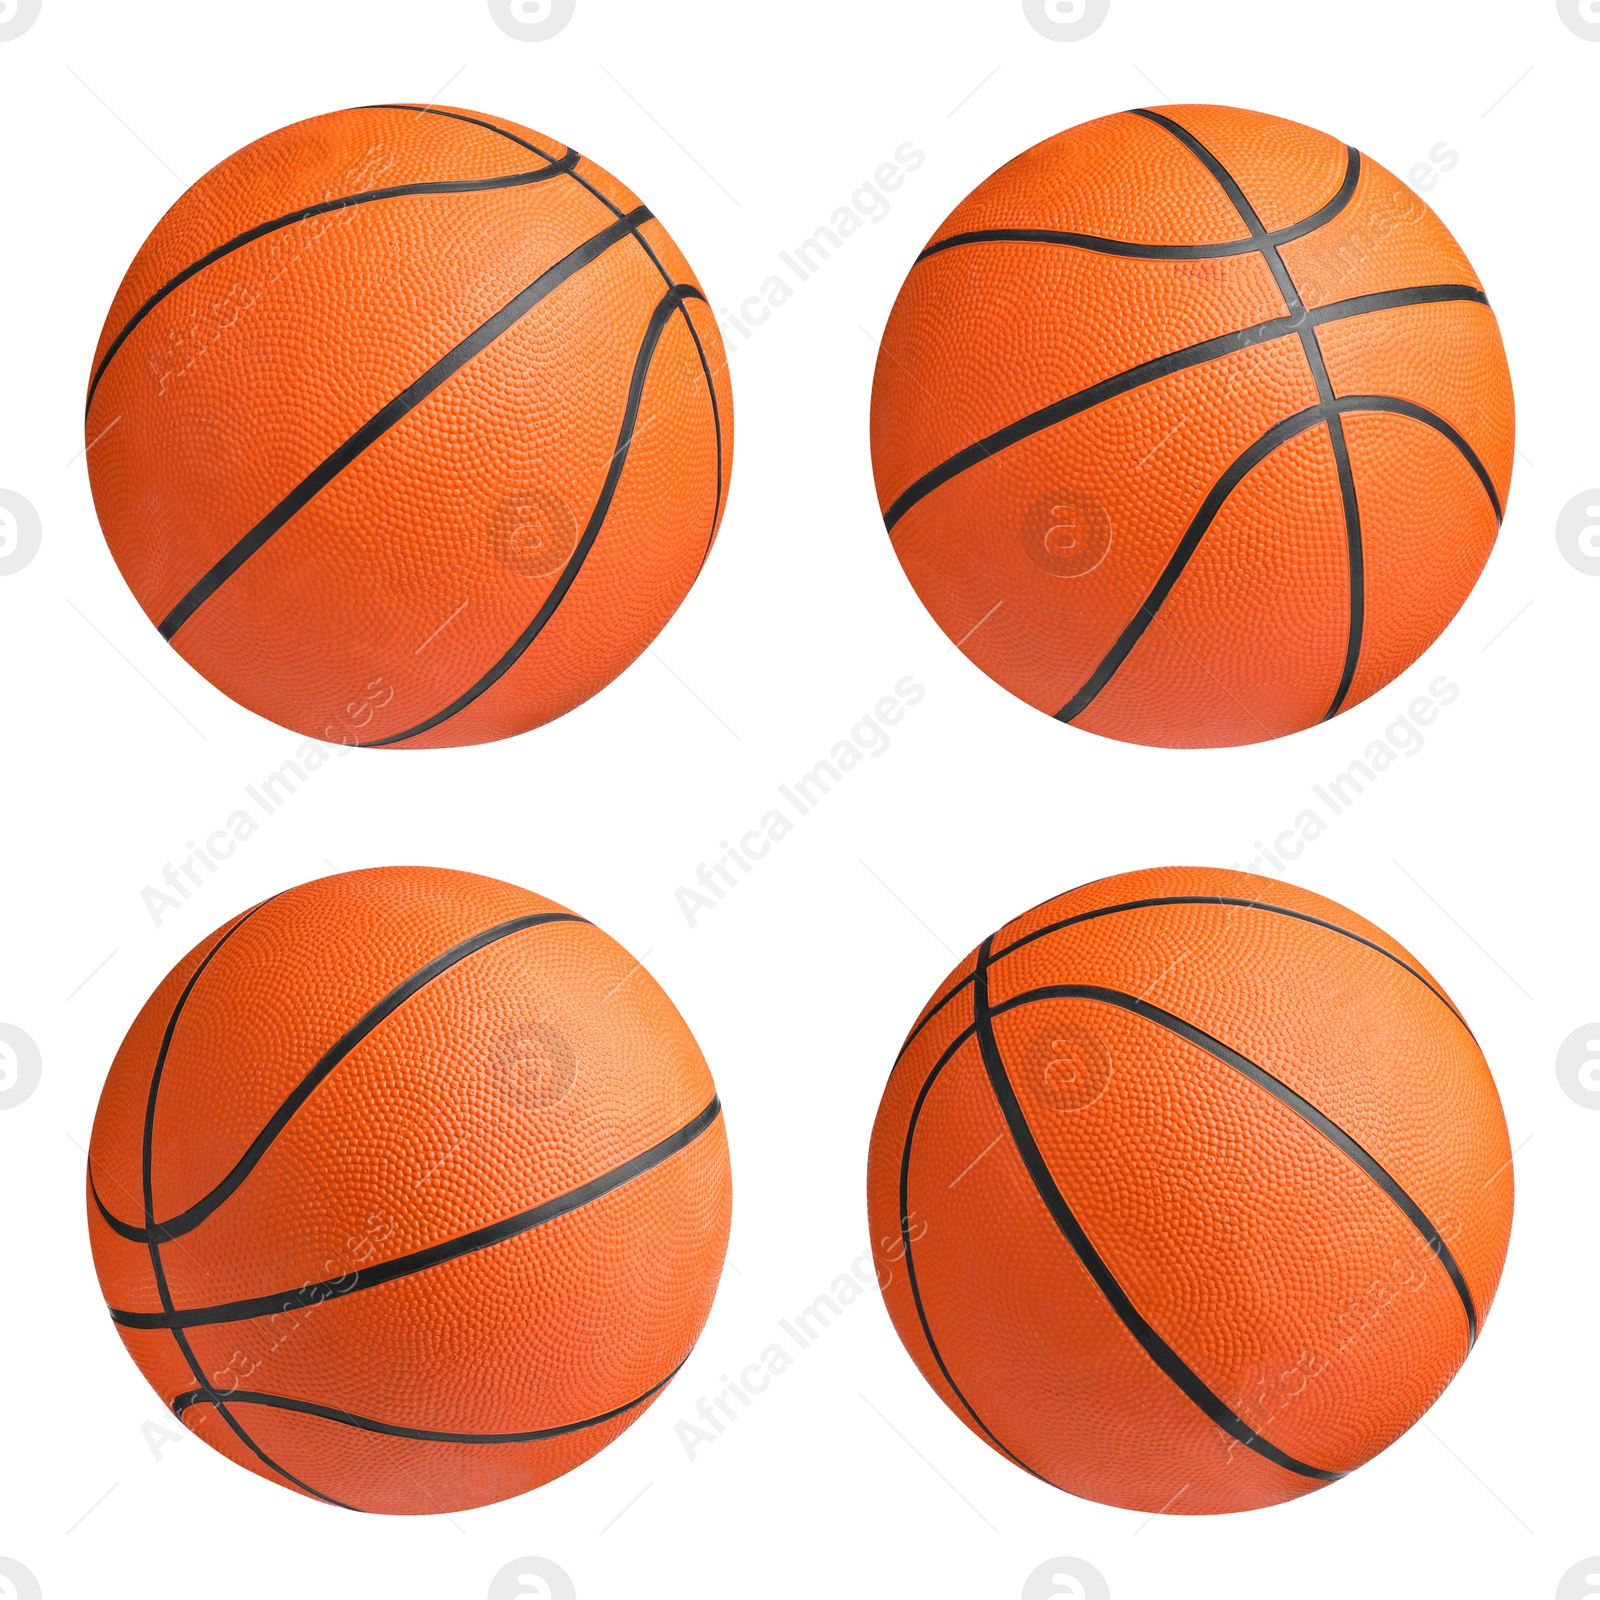 Image of Set with orange basketball balls on white background 